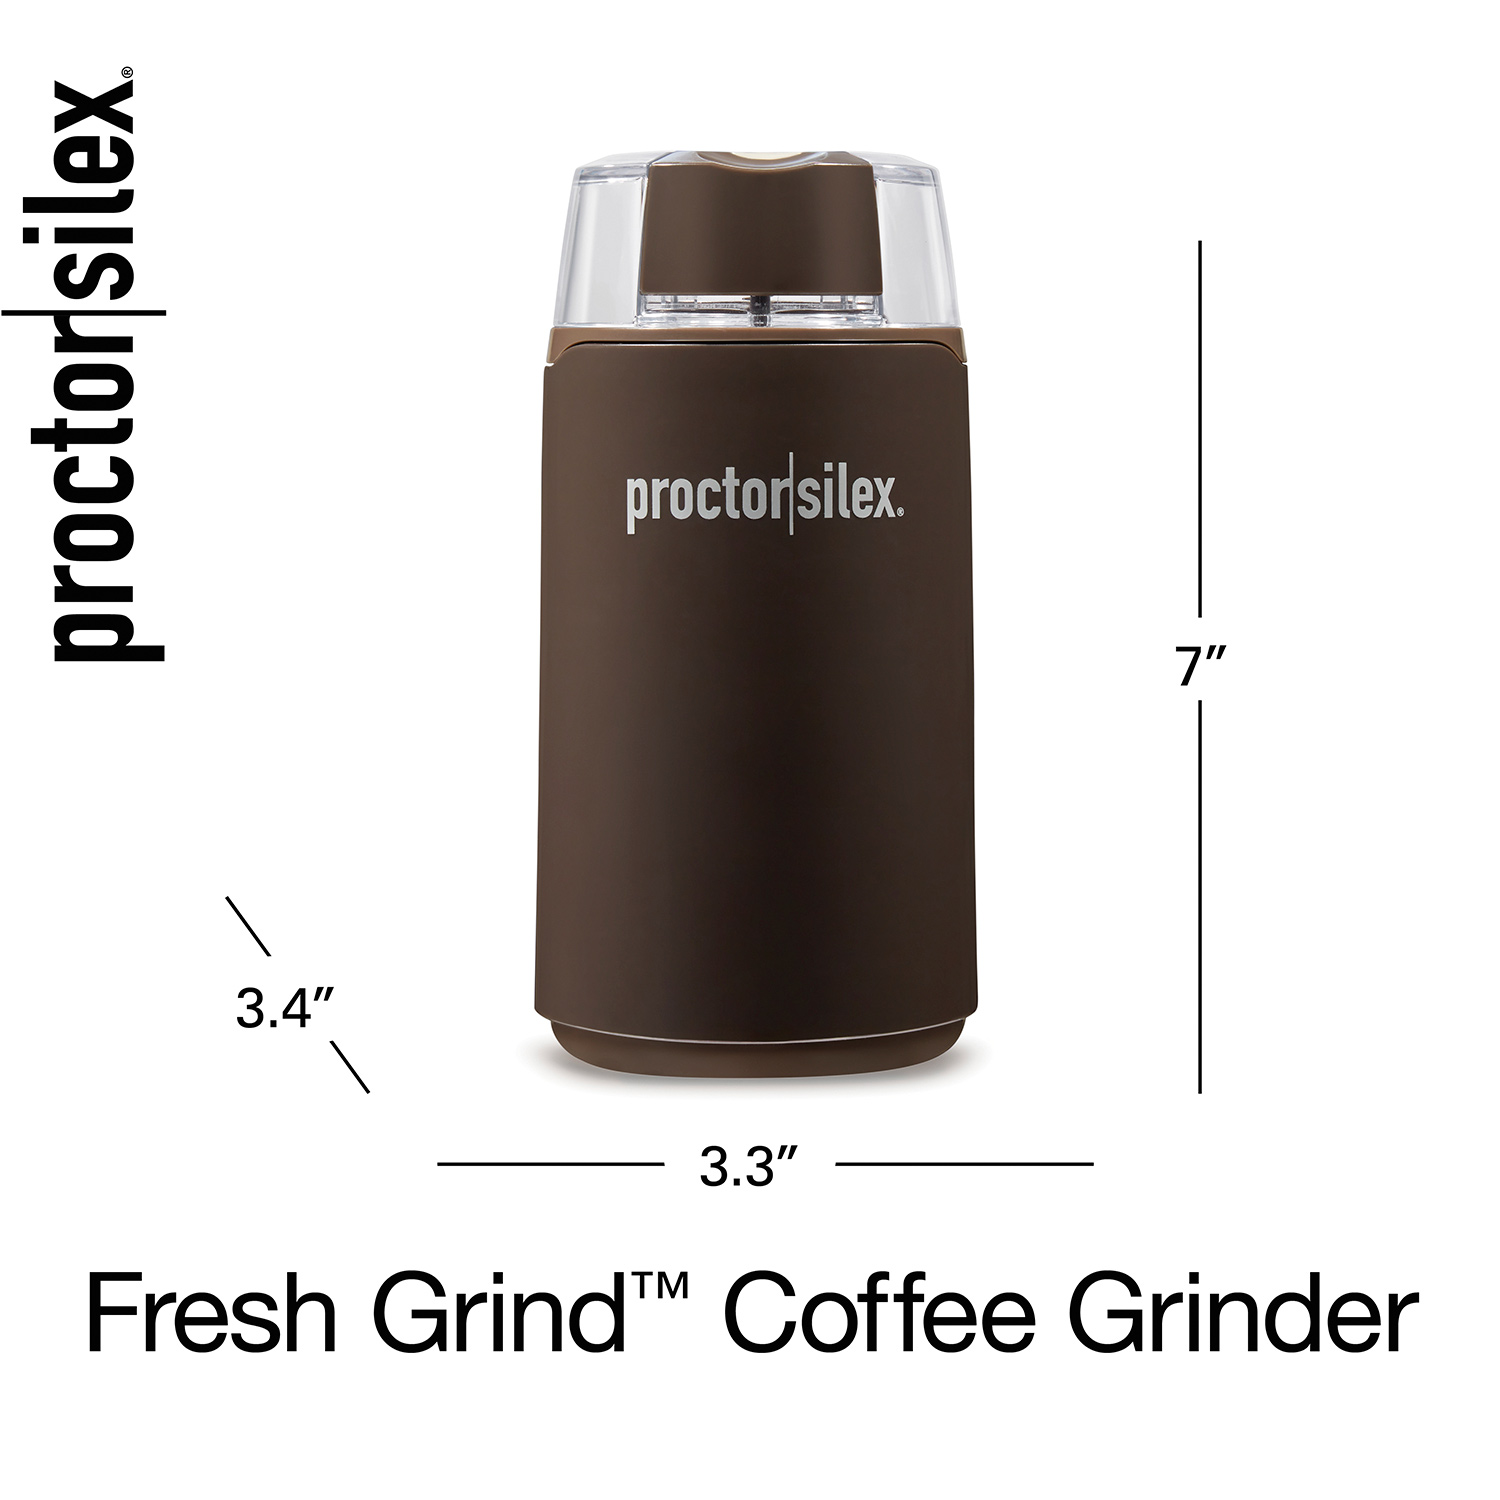 Fresh Grind Coffee Grinder, Black - Model E167CYR